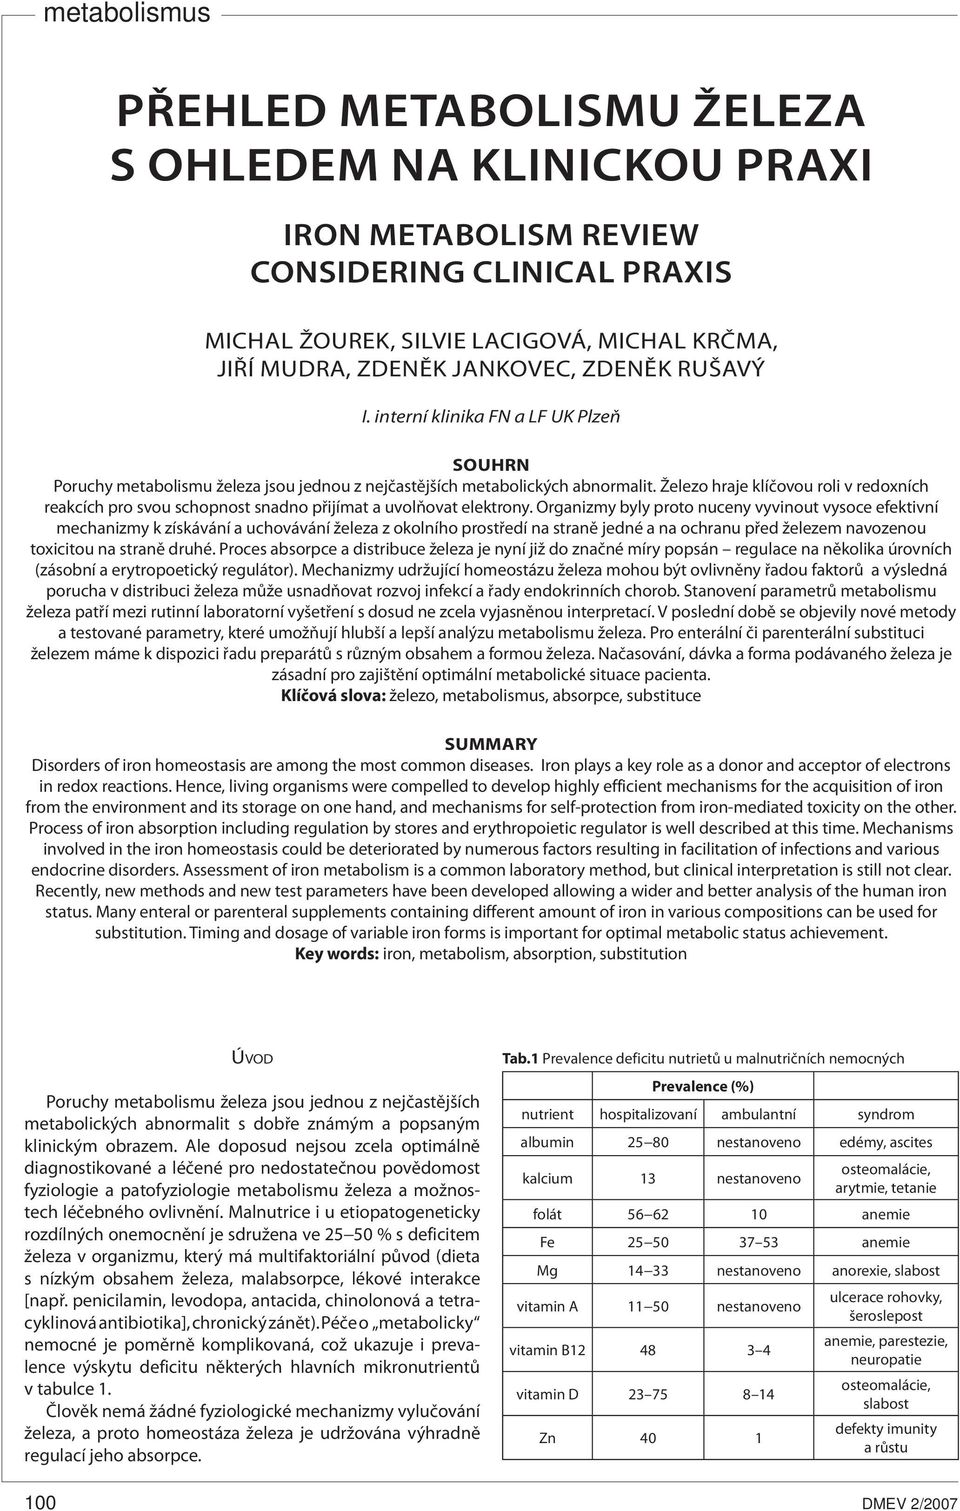 PŘEHLED METABOLISMU ŽELEZA S OHLEDEM NA KLINICKOU PRAXI - PDF Stažení zdarma